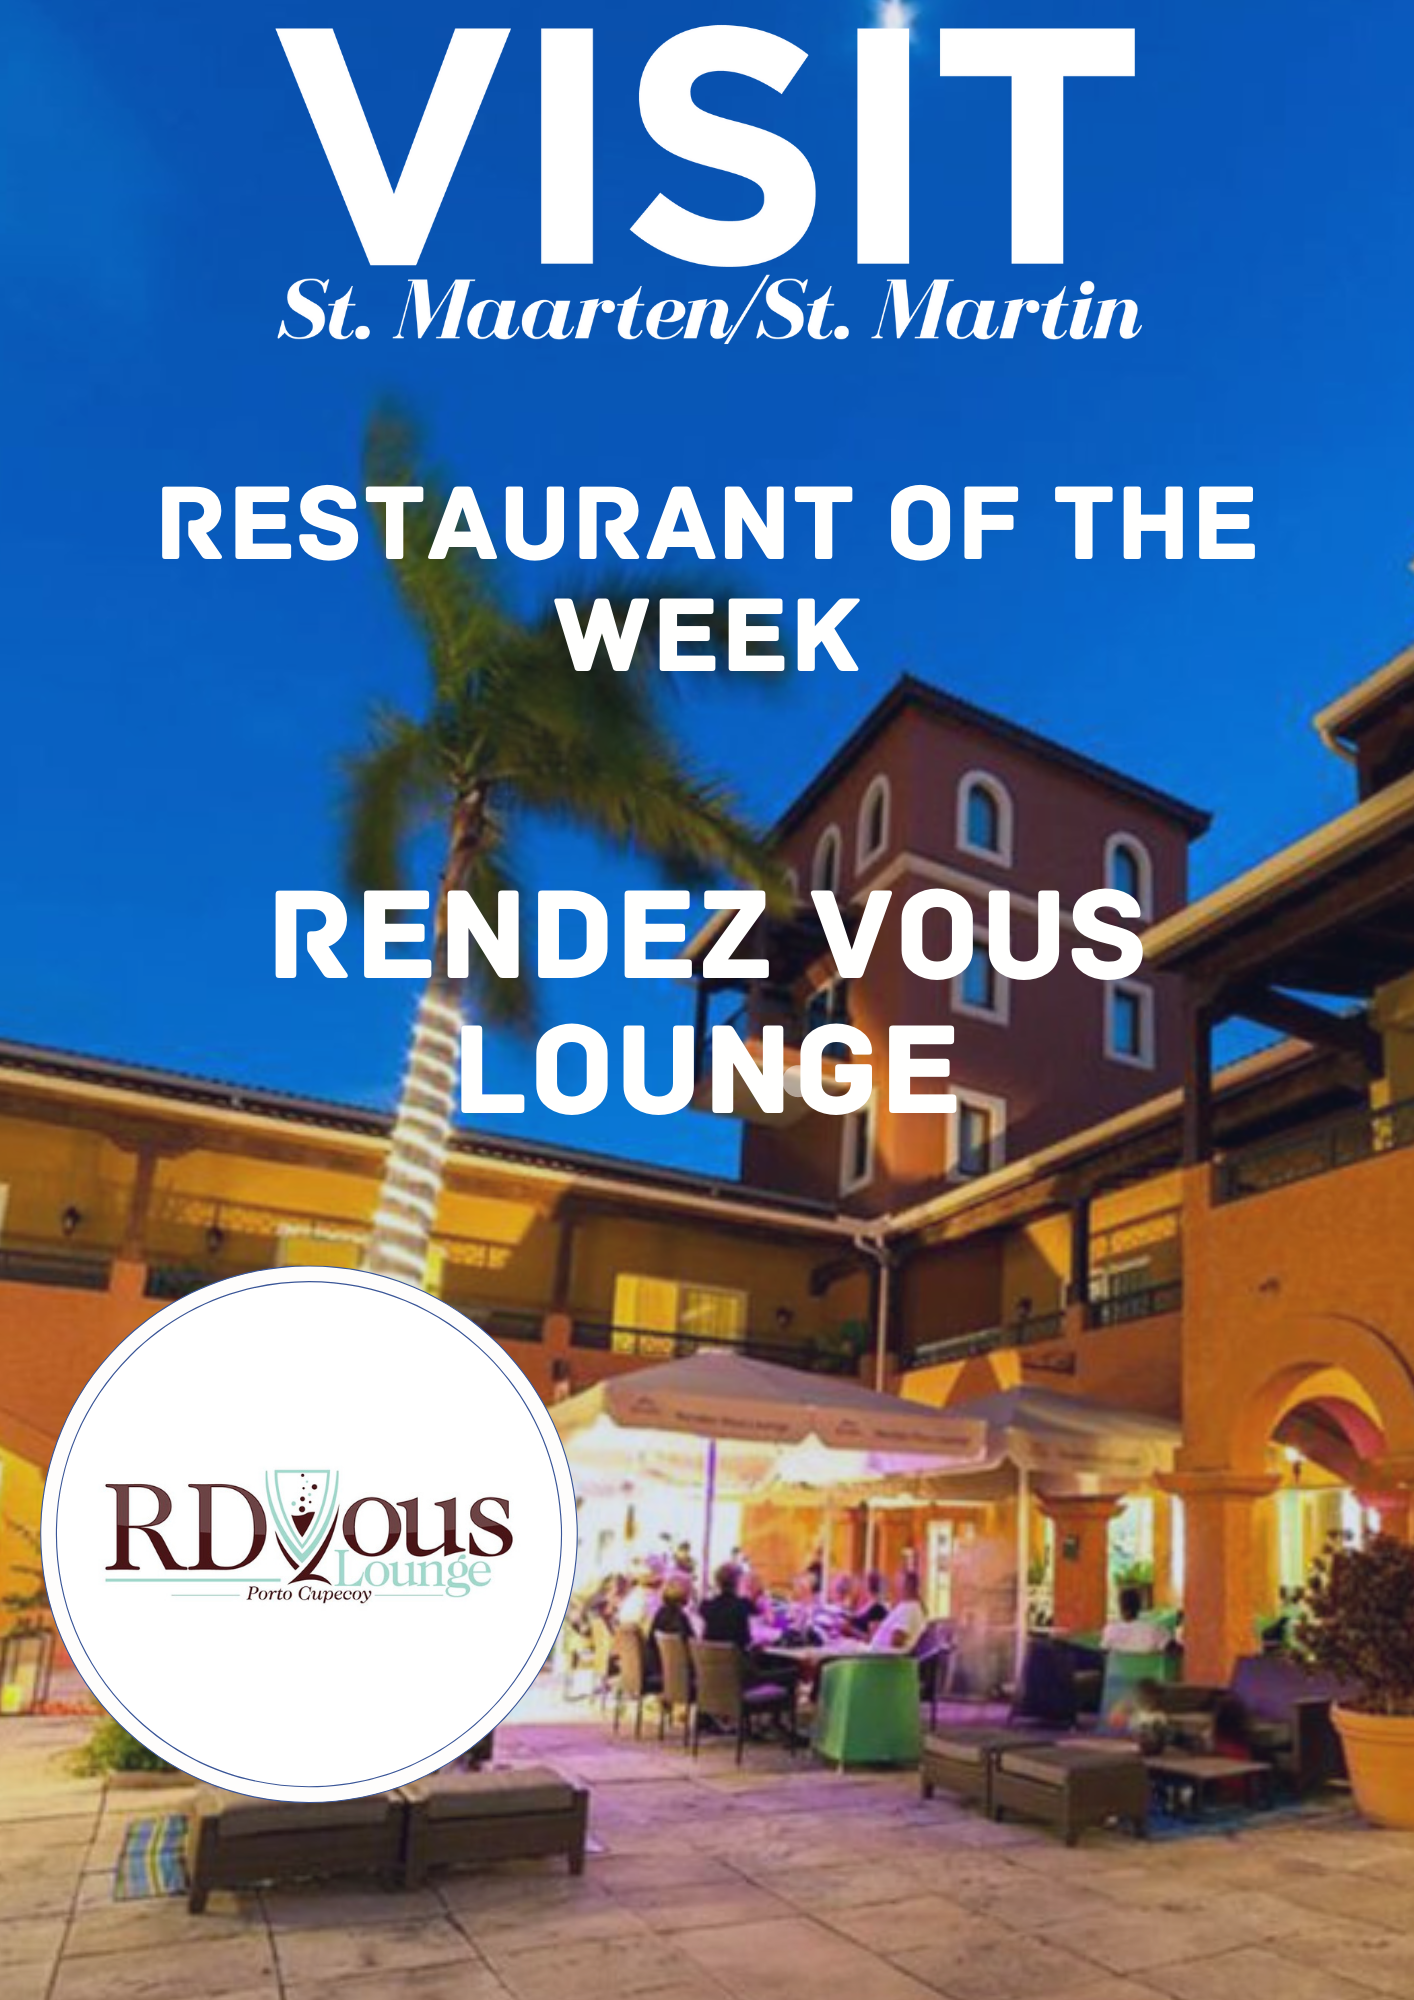 Rendez Vous Lounge Porto Cupecoy St. Maarten